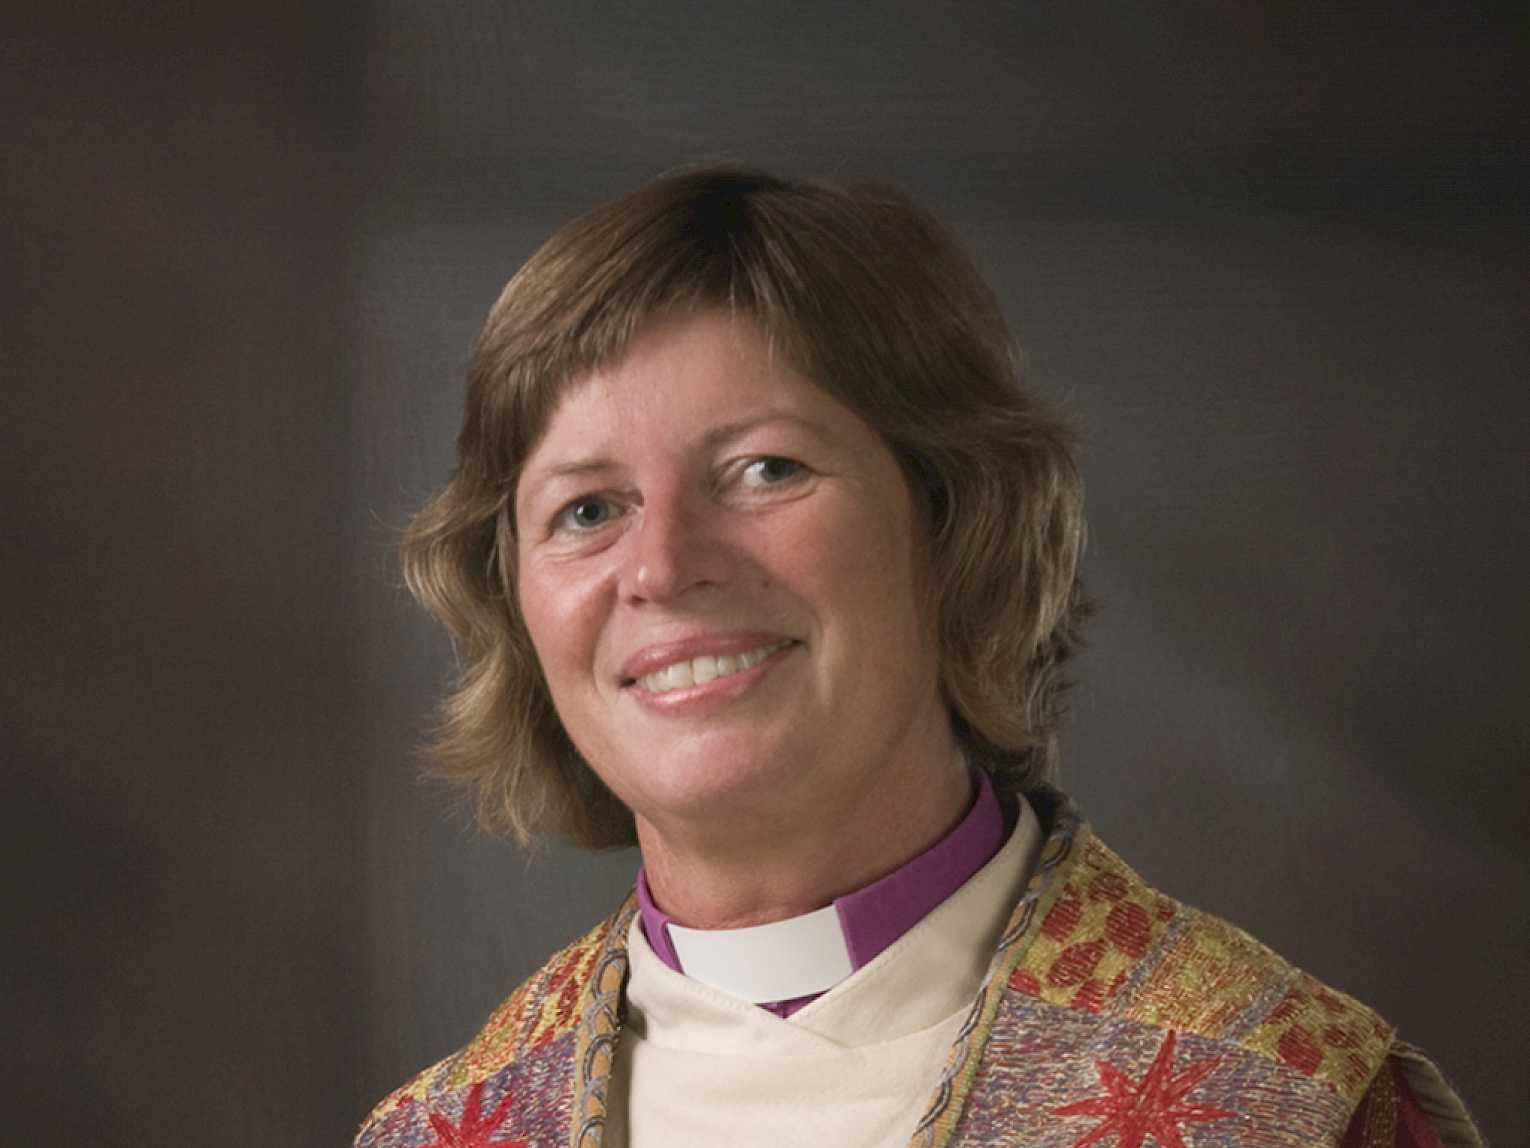 Biskop Ingeborg Midttømme er nytt styremedlem i hovedstyret. Foto: Anita Grønland/Den norske kirke